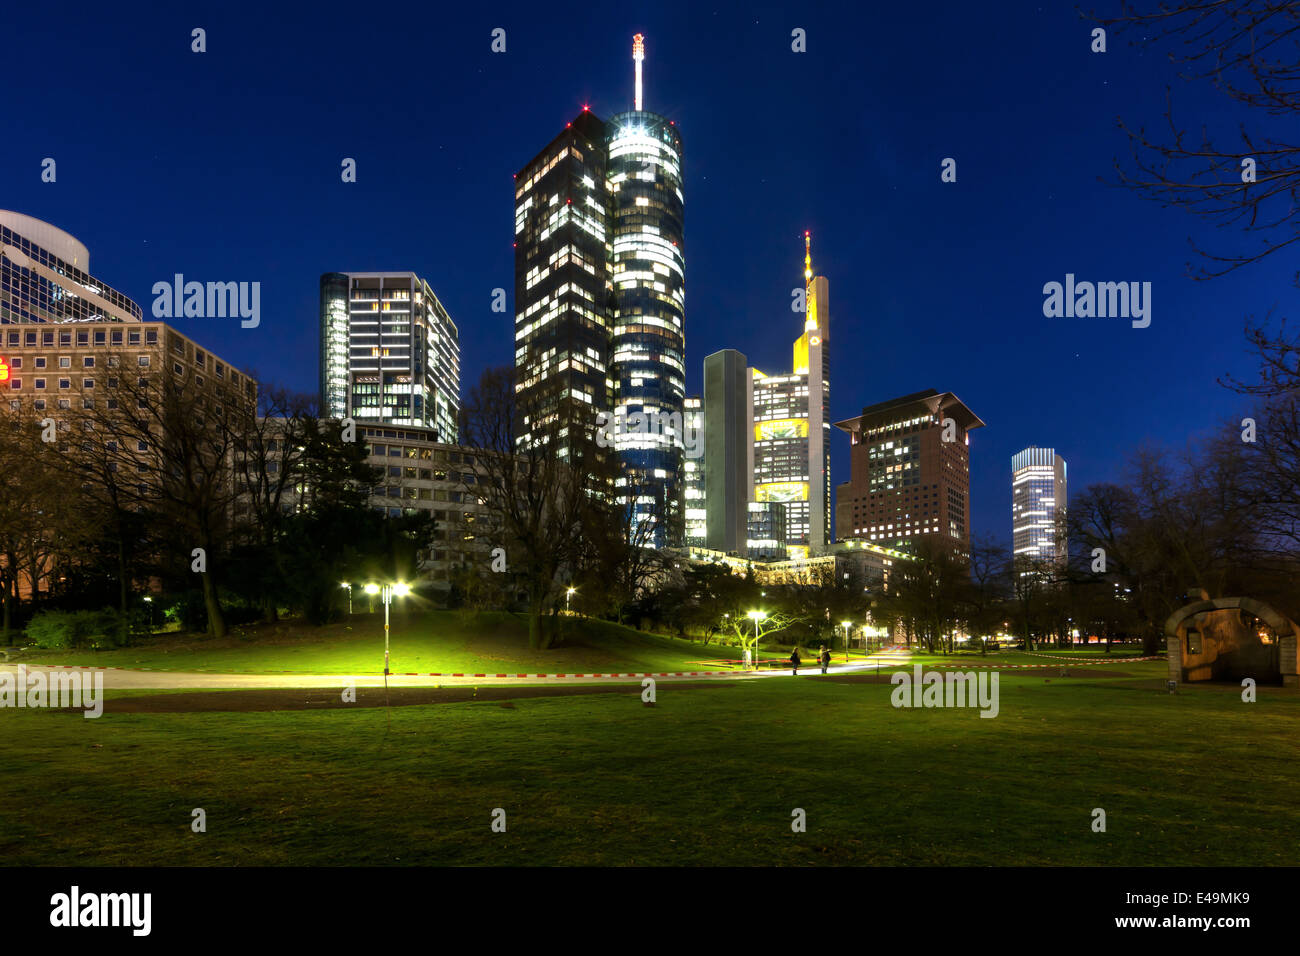 Germania, Hesse, Francoforte, il quartiere finanziario, la Helaba, Commerzbank, Giappone la torre e la Banca centrale europea , BCE, di notte Foto Stock